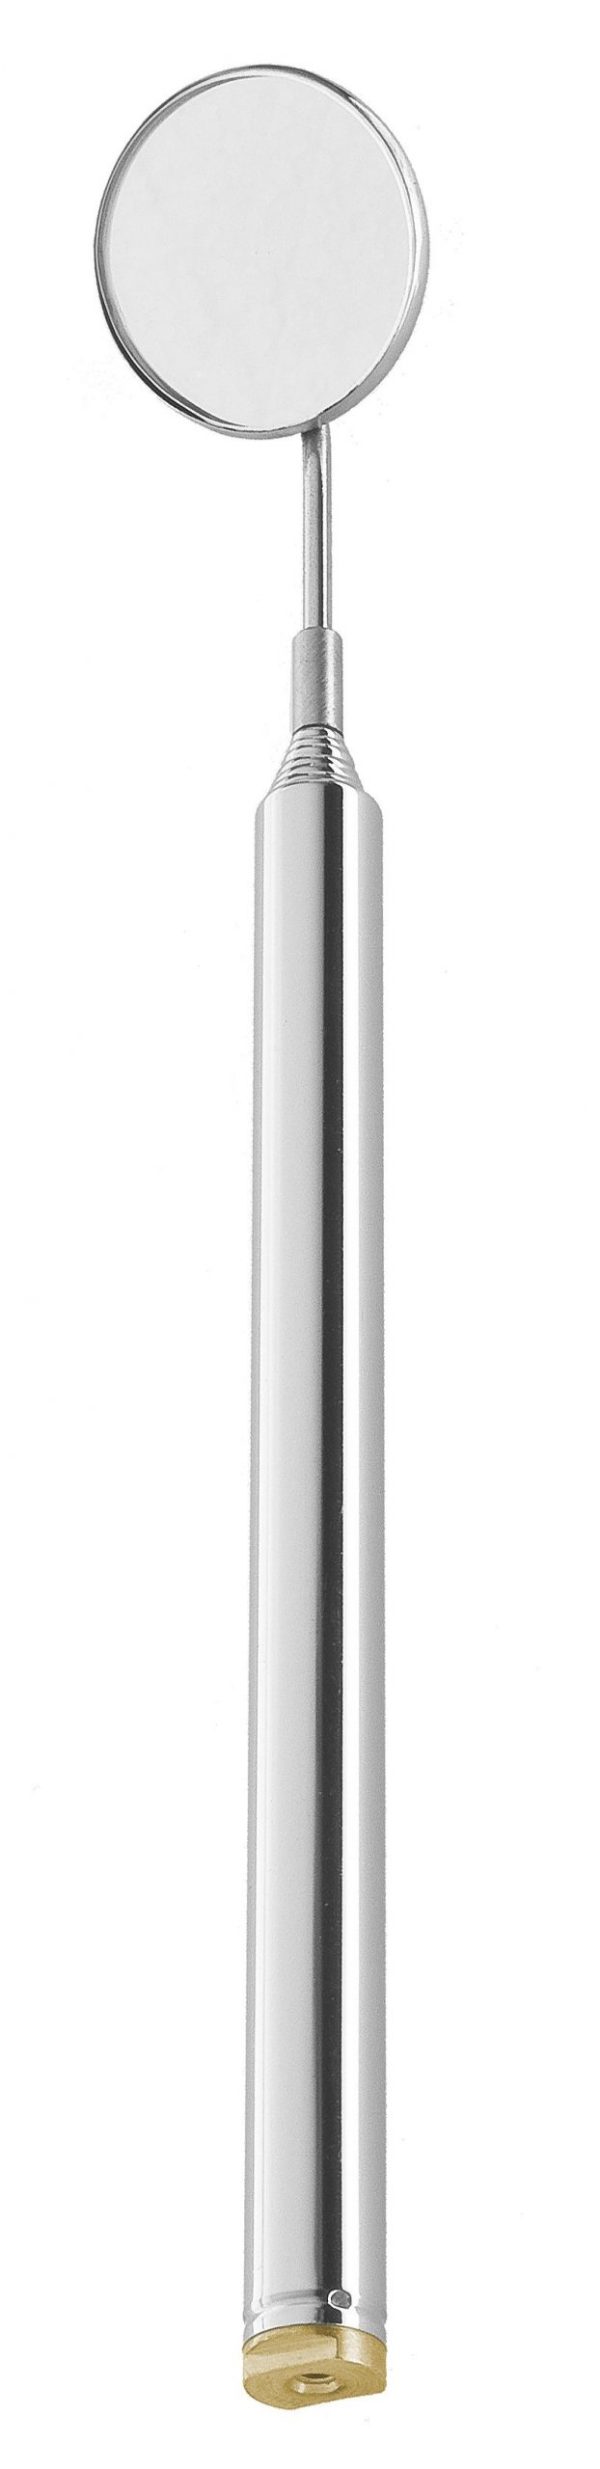 Teleskopspiegelgriff -180- 64.235.85zum Preis von 12.43 zzgl. Versand Hersteller : Heiko Wild